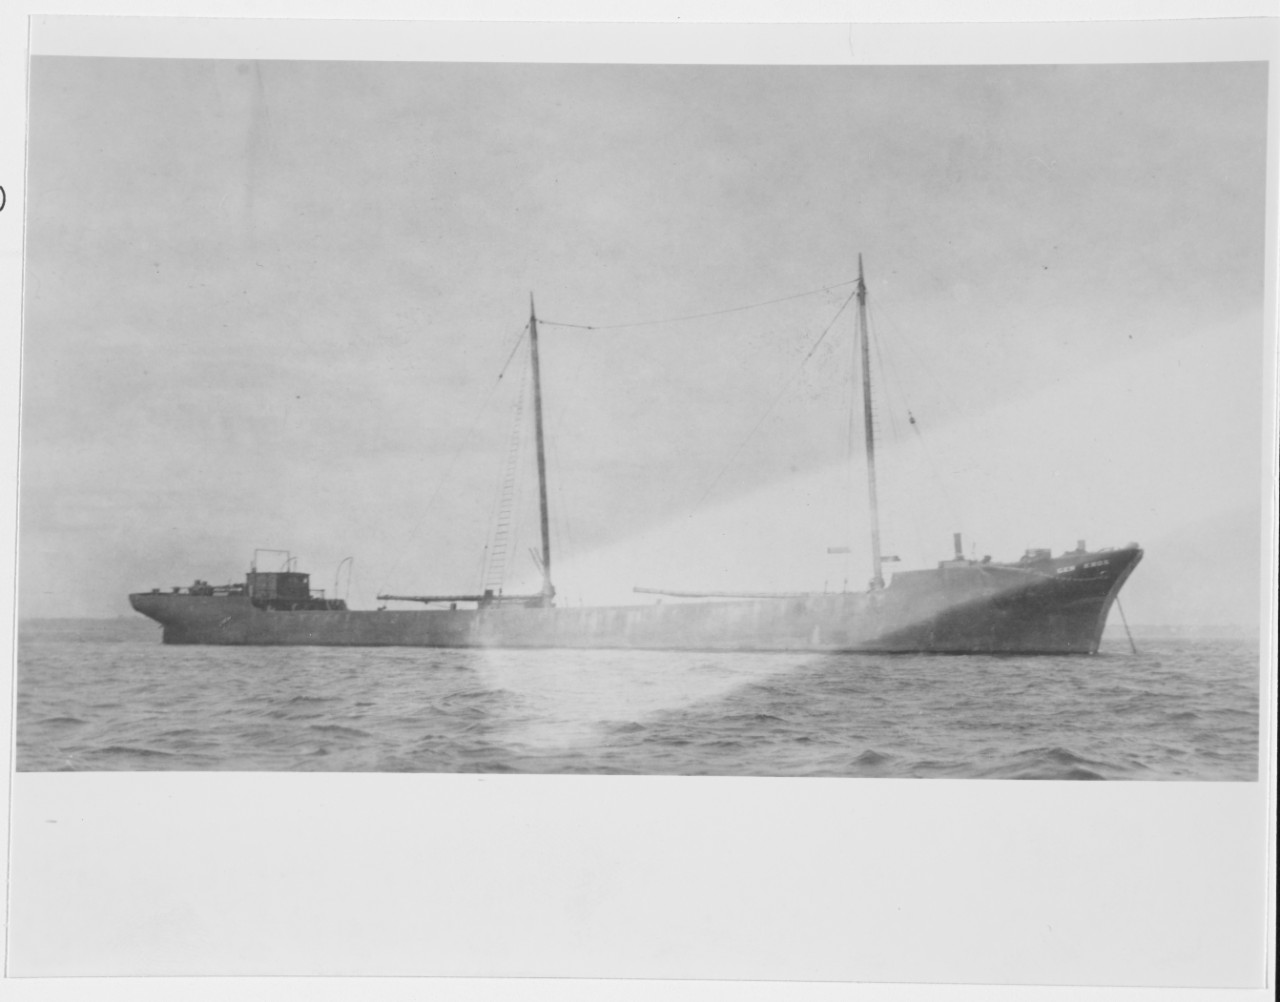 GENERAL KNOX (U.S. Schooner Barge, 1881)